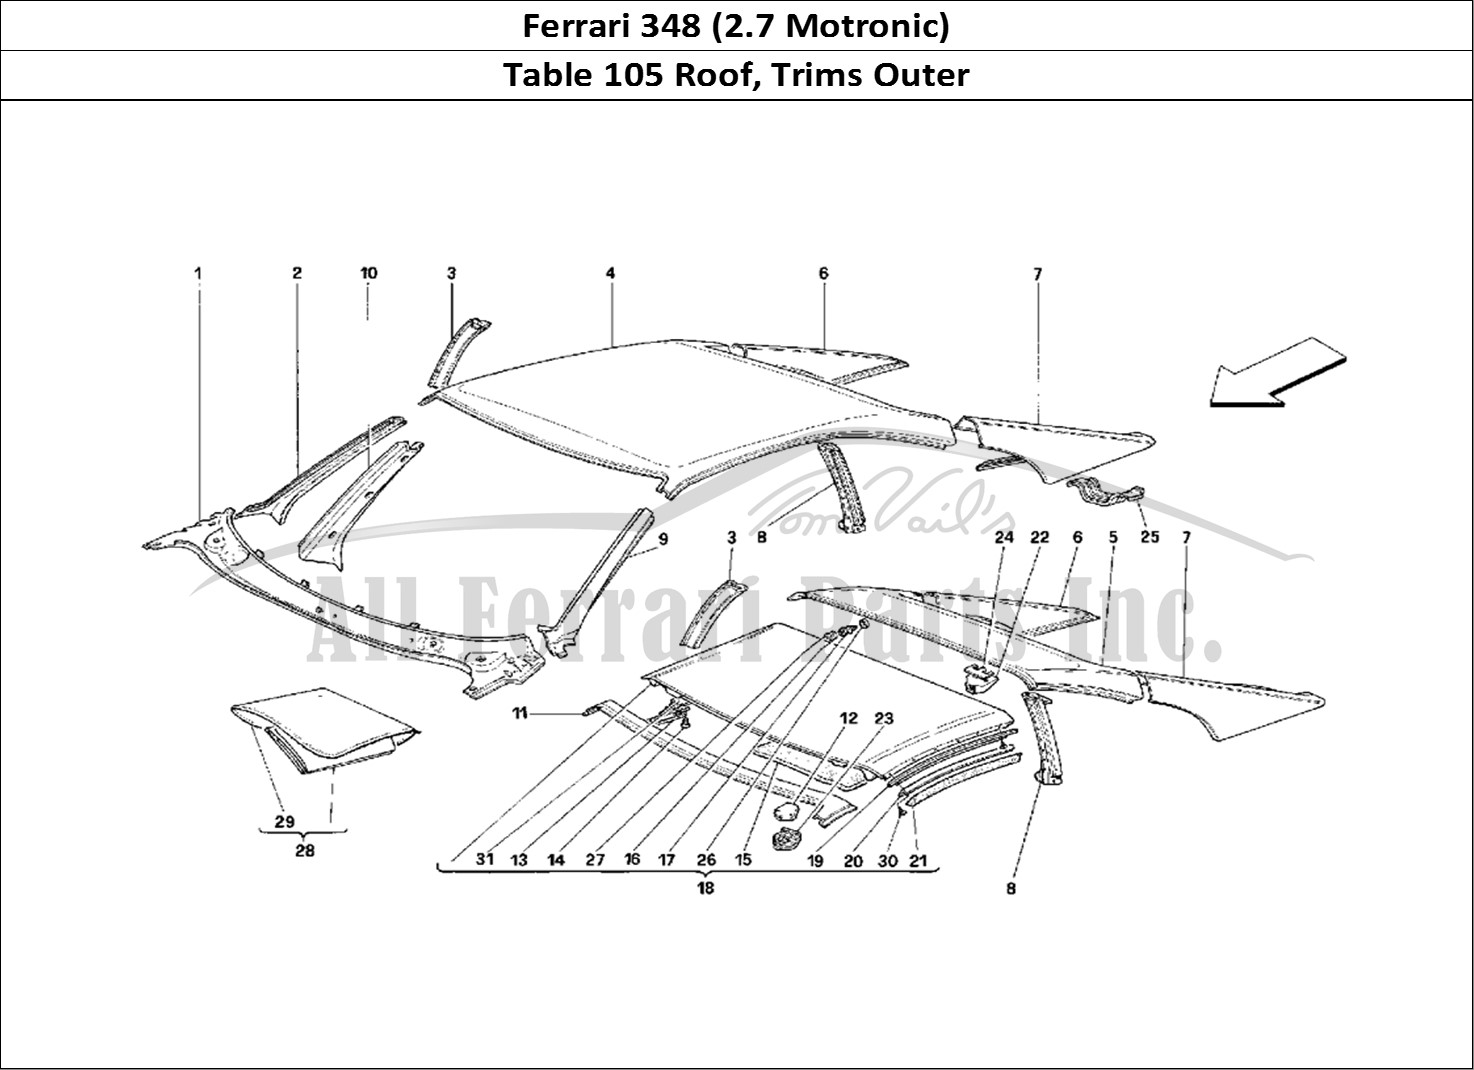 Ferrari Parts Ferrari 348 (2.7 Motronic) Page 105 Roof - Outer Trims